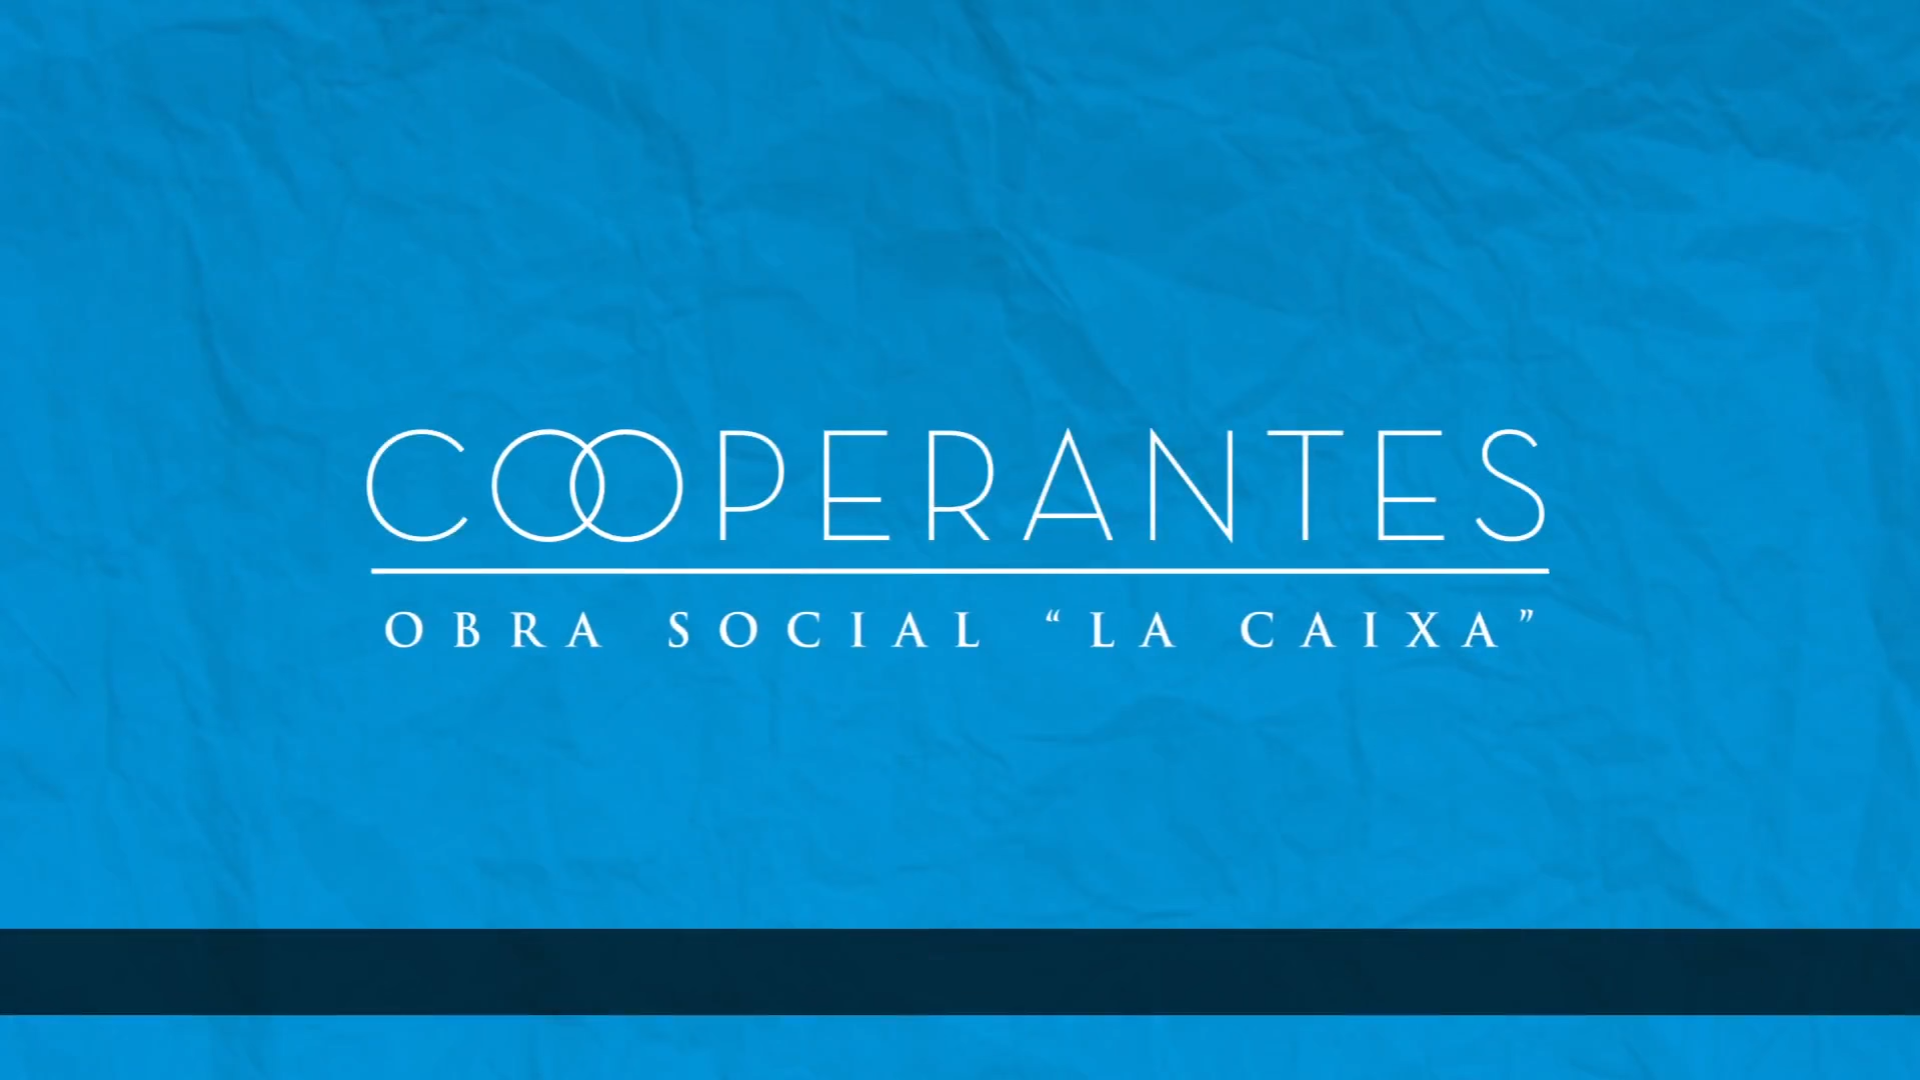 PROGRAMA “COOPERANTES CAIXA” EN EL SALVADOR